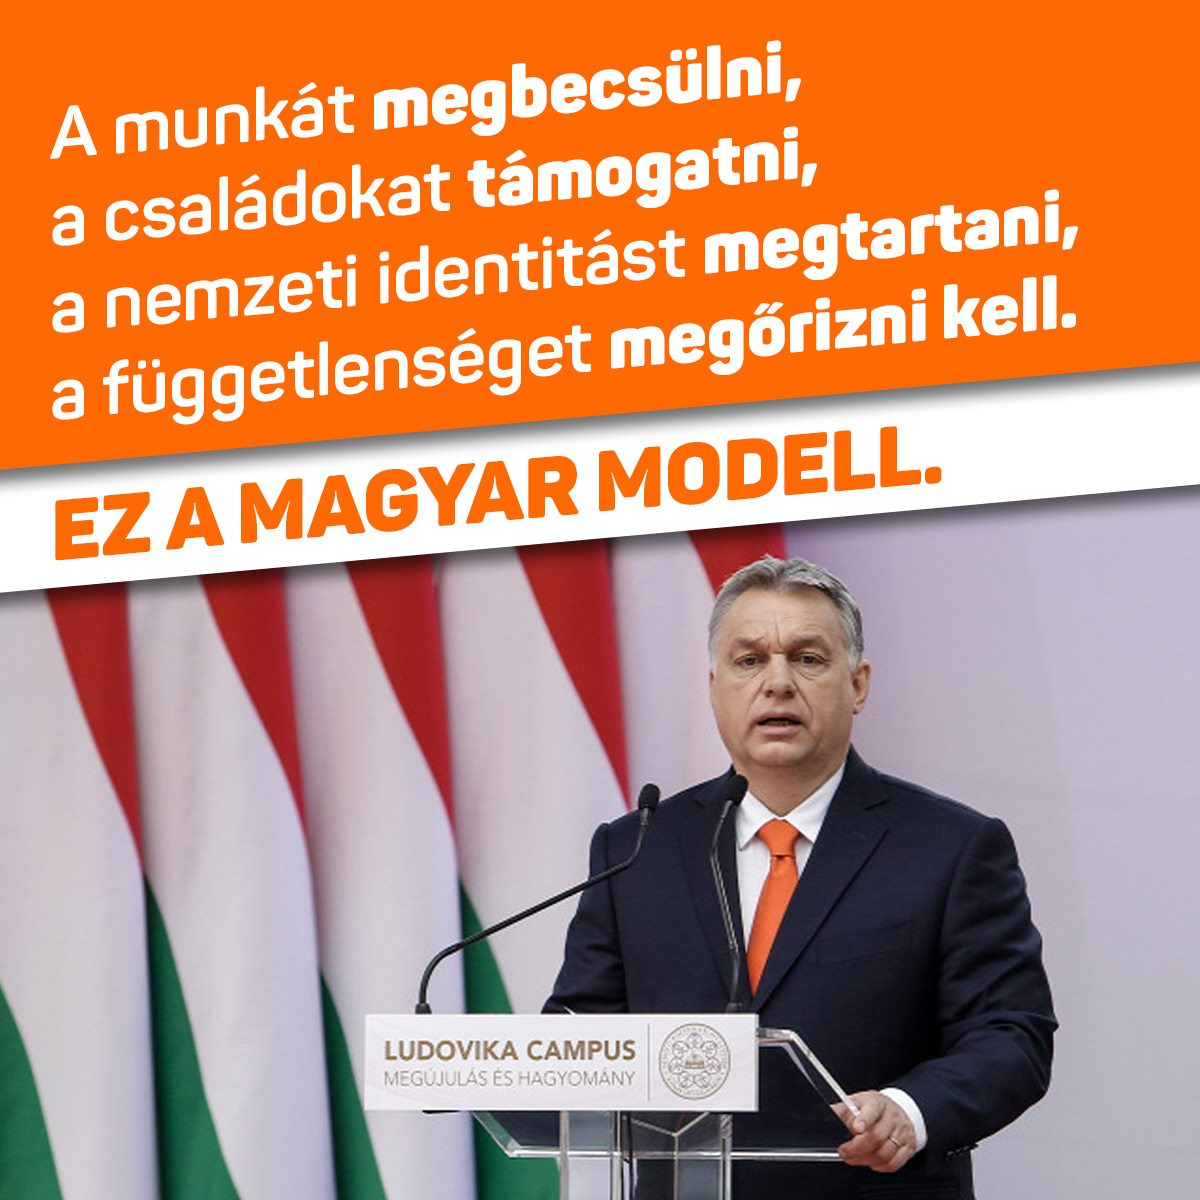 A munkát megbecsülni, a családokat támogatni, a nemzeti identitást megtartani, a függetlenséget megőrizni kell. Ez a magyar modell – mondta Orbán Viktor.